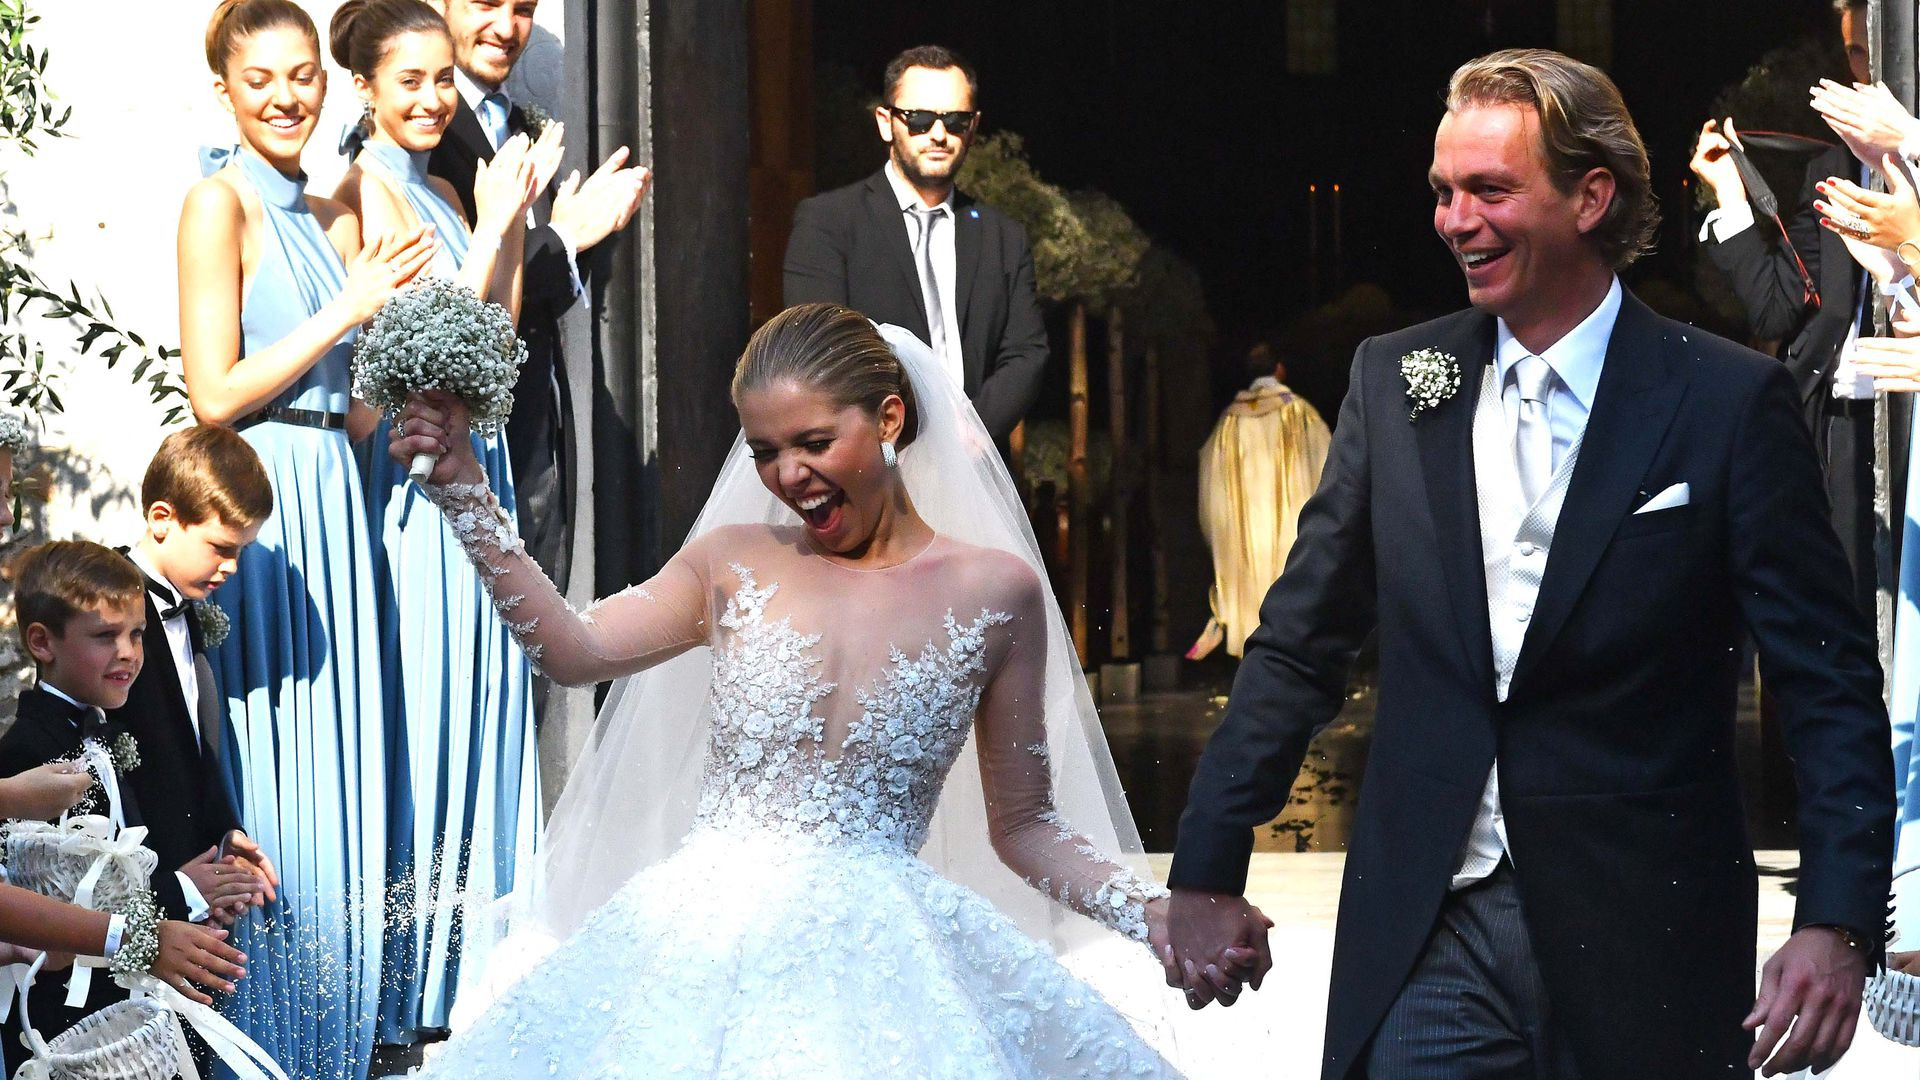 Swarovski Hochzeitskleid
 17 Jahre Vicky Swarovski ist Alters Unterschied in Ehe